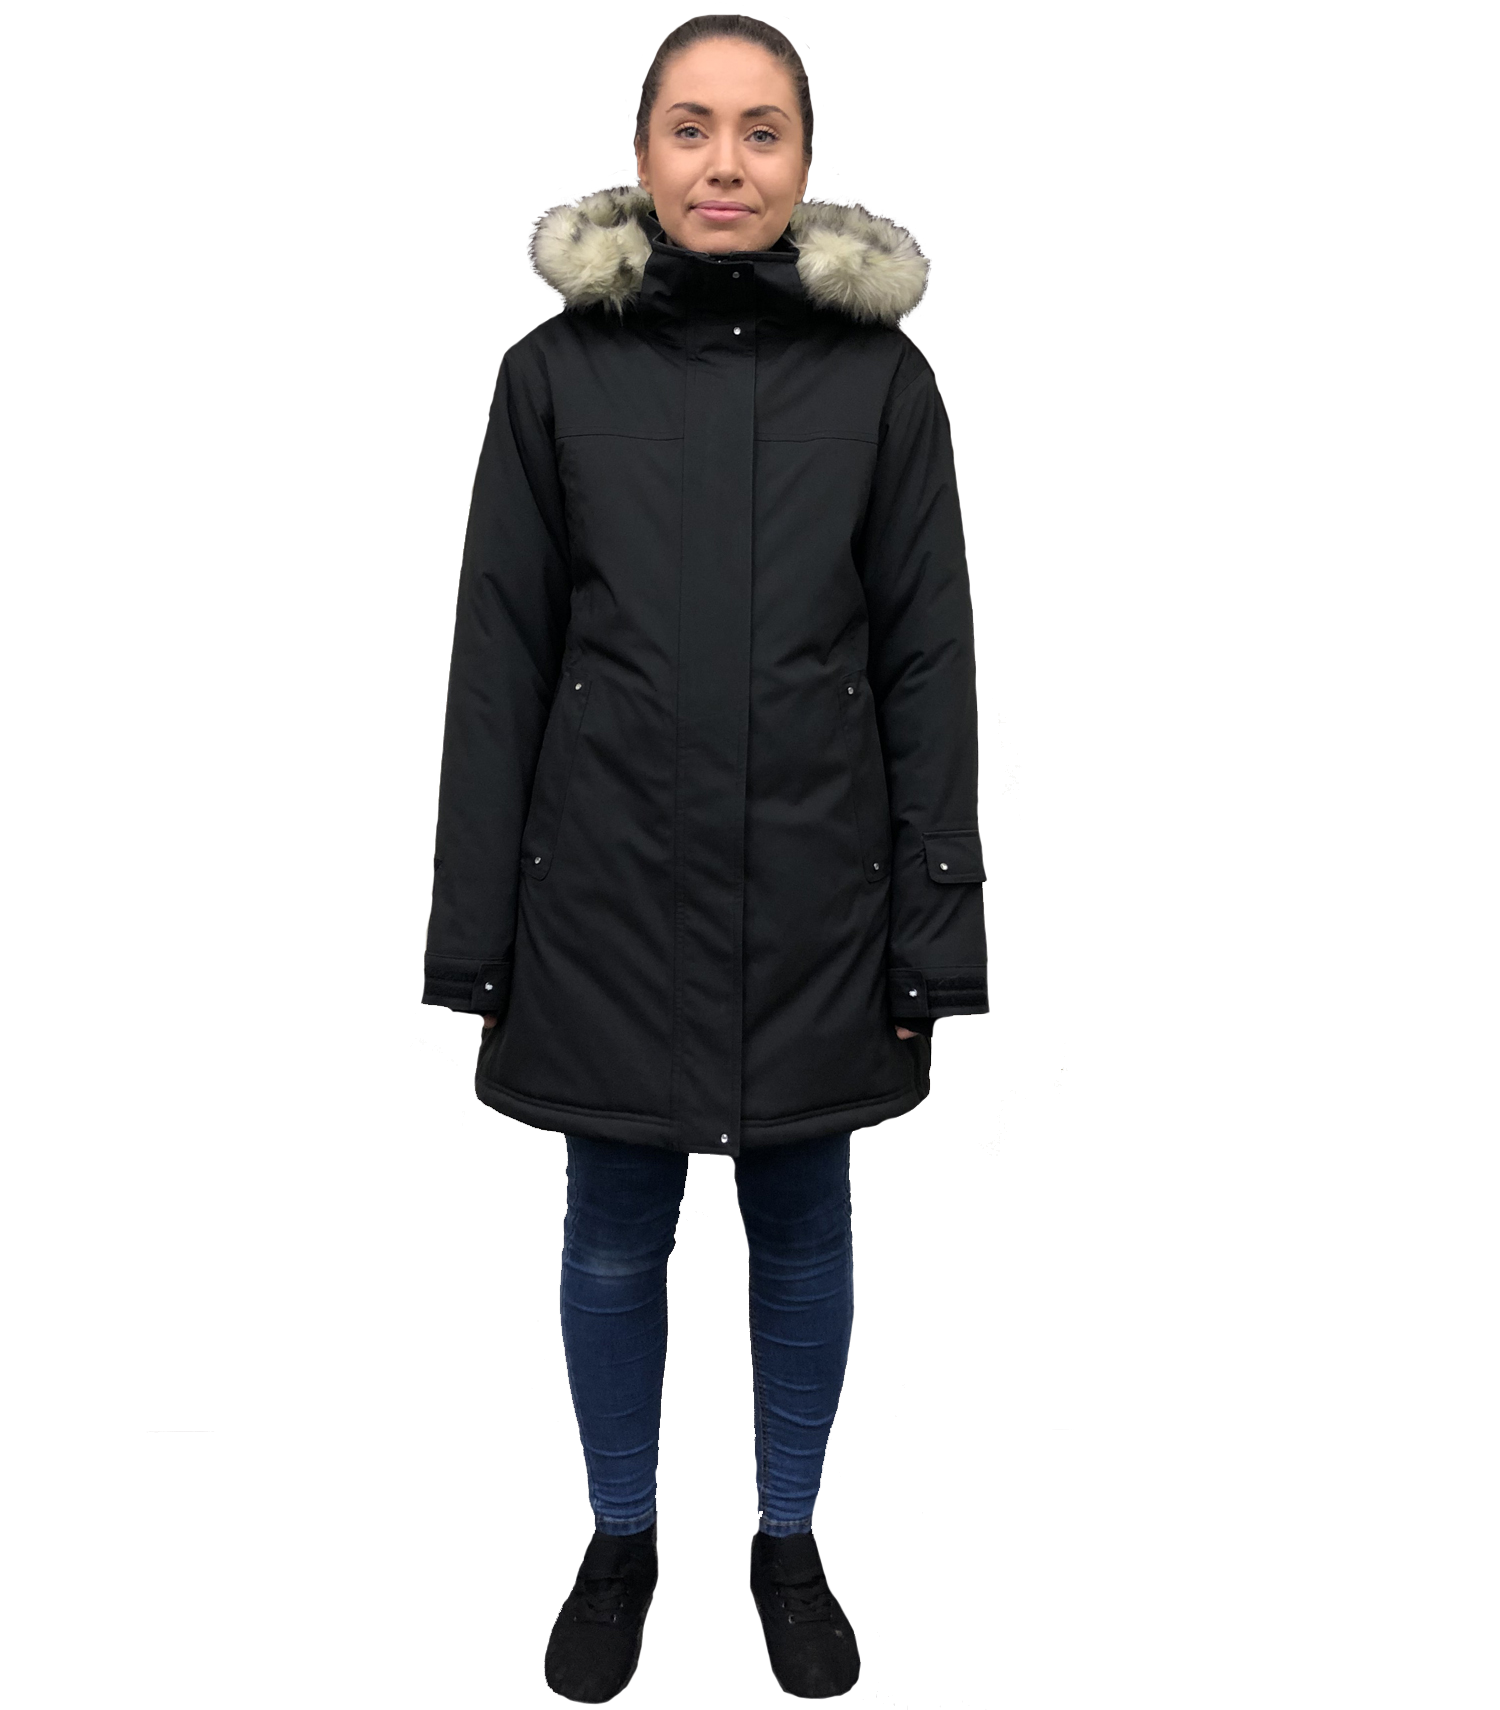 Buy Cartel Brooklyn PLUS Size Women's Snow Ski Jacket- BLACK LONG ...